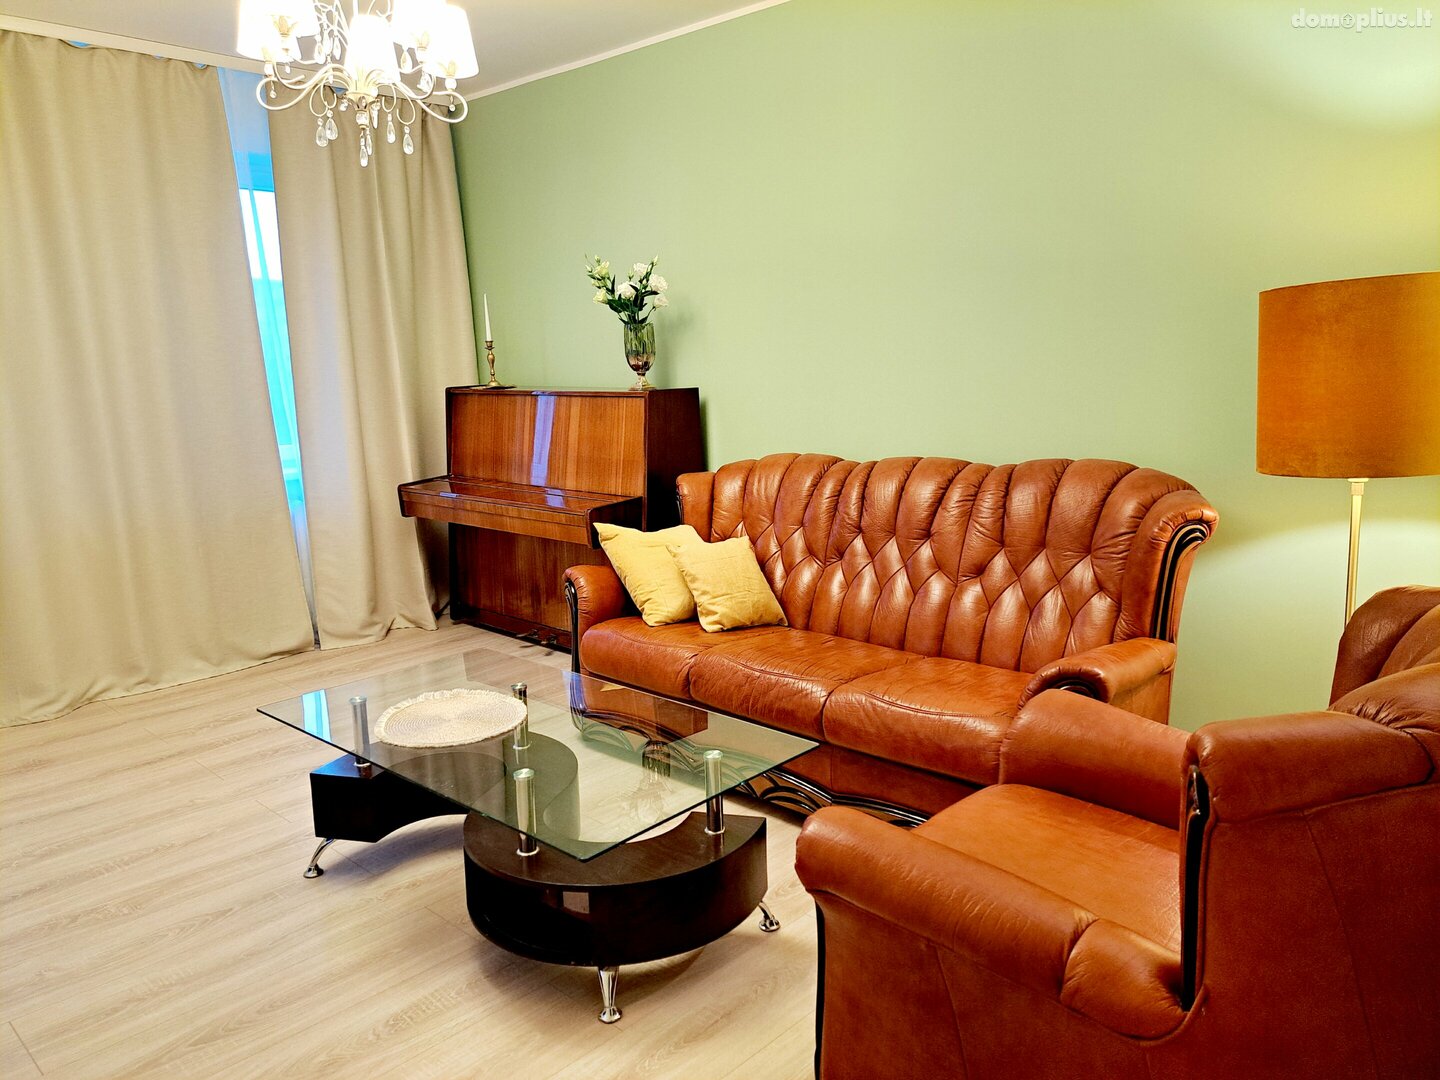 Продается 3 комнатная квартира Kaune, Eiguliuose, Ašigalio g.